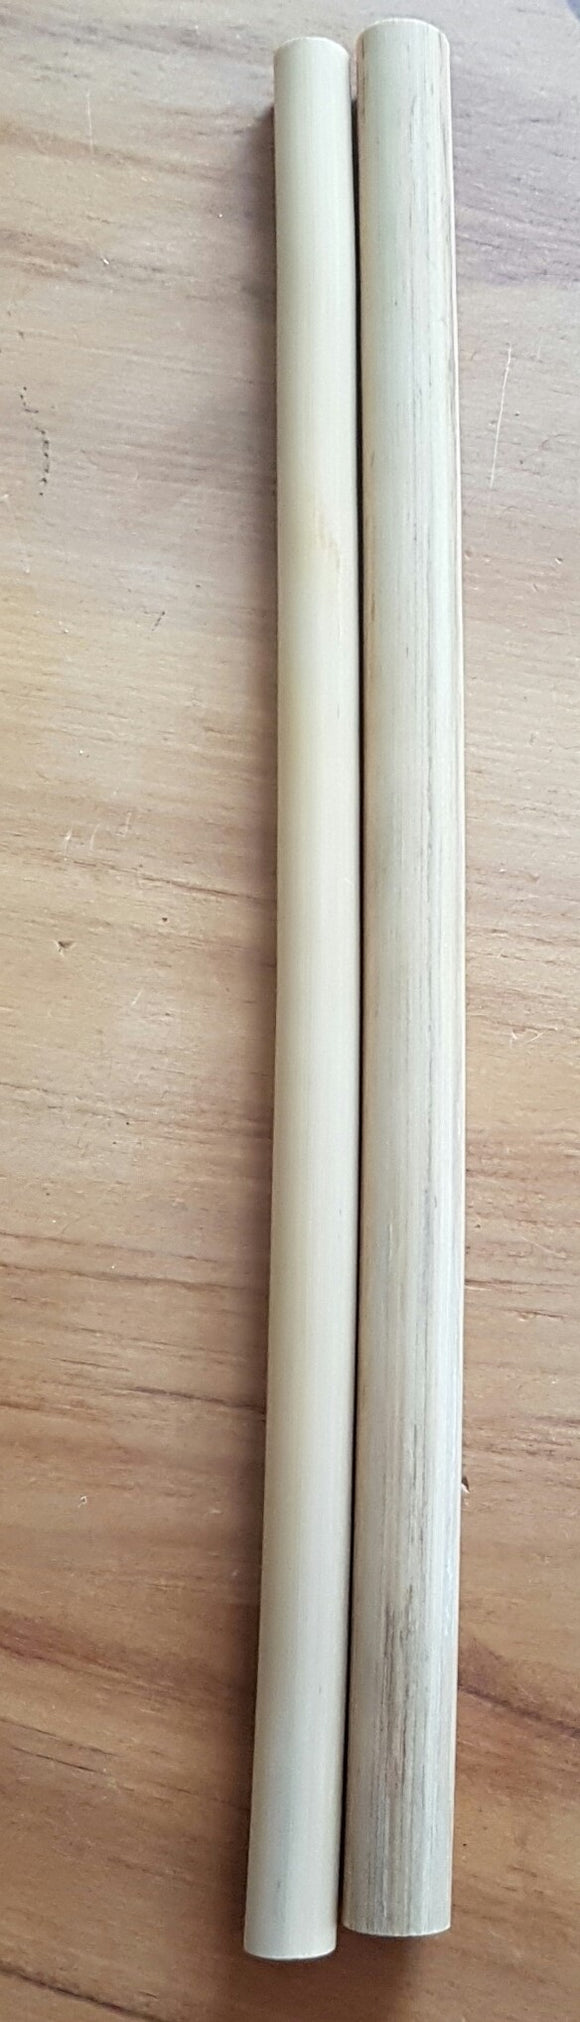 2 x Natural Bamboo straws